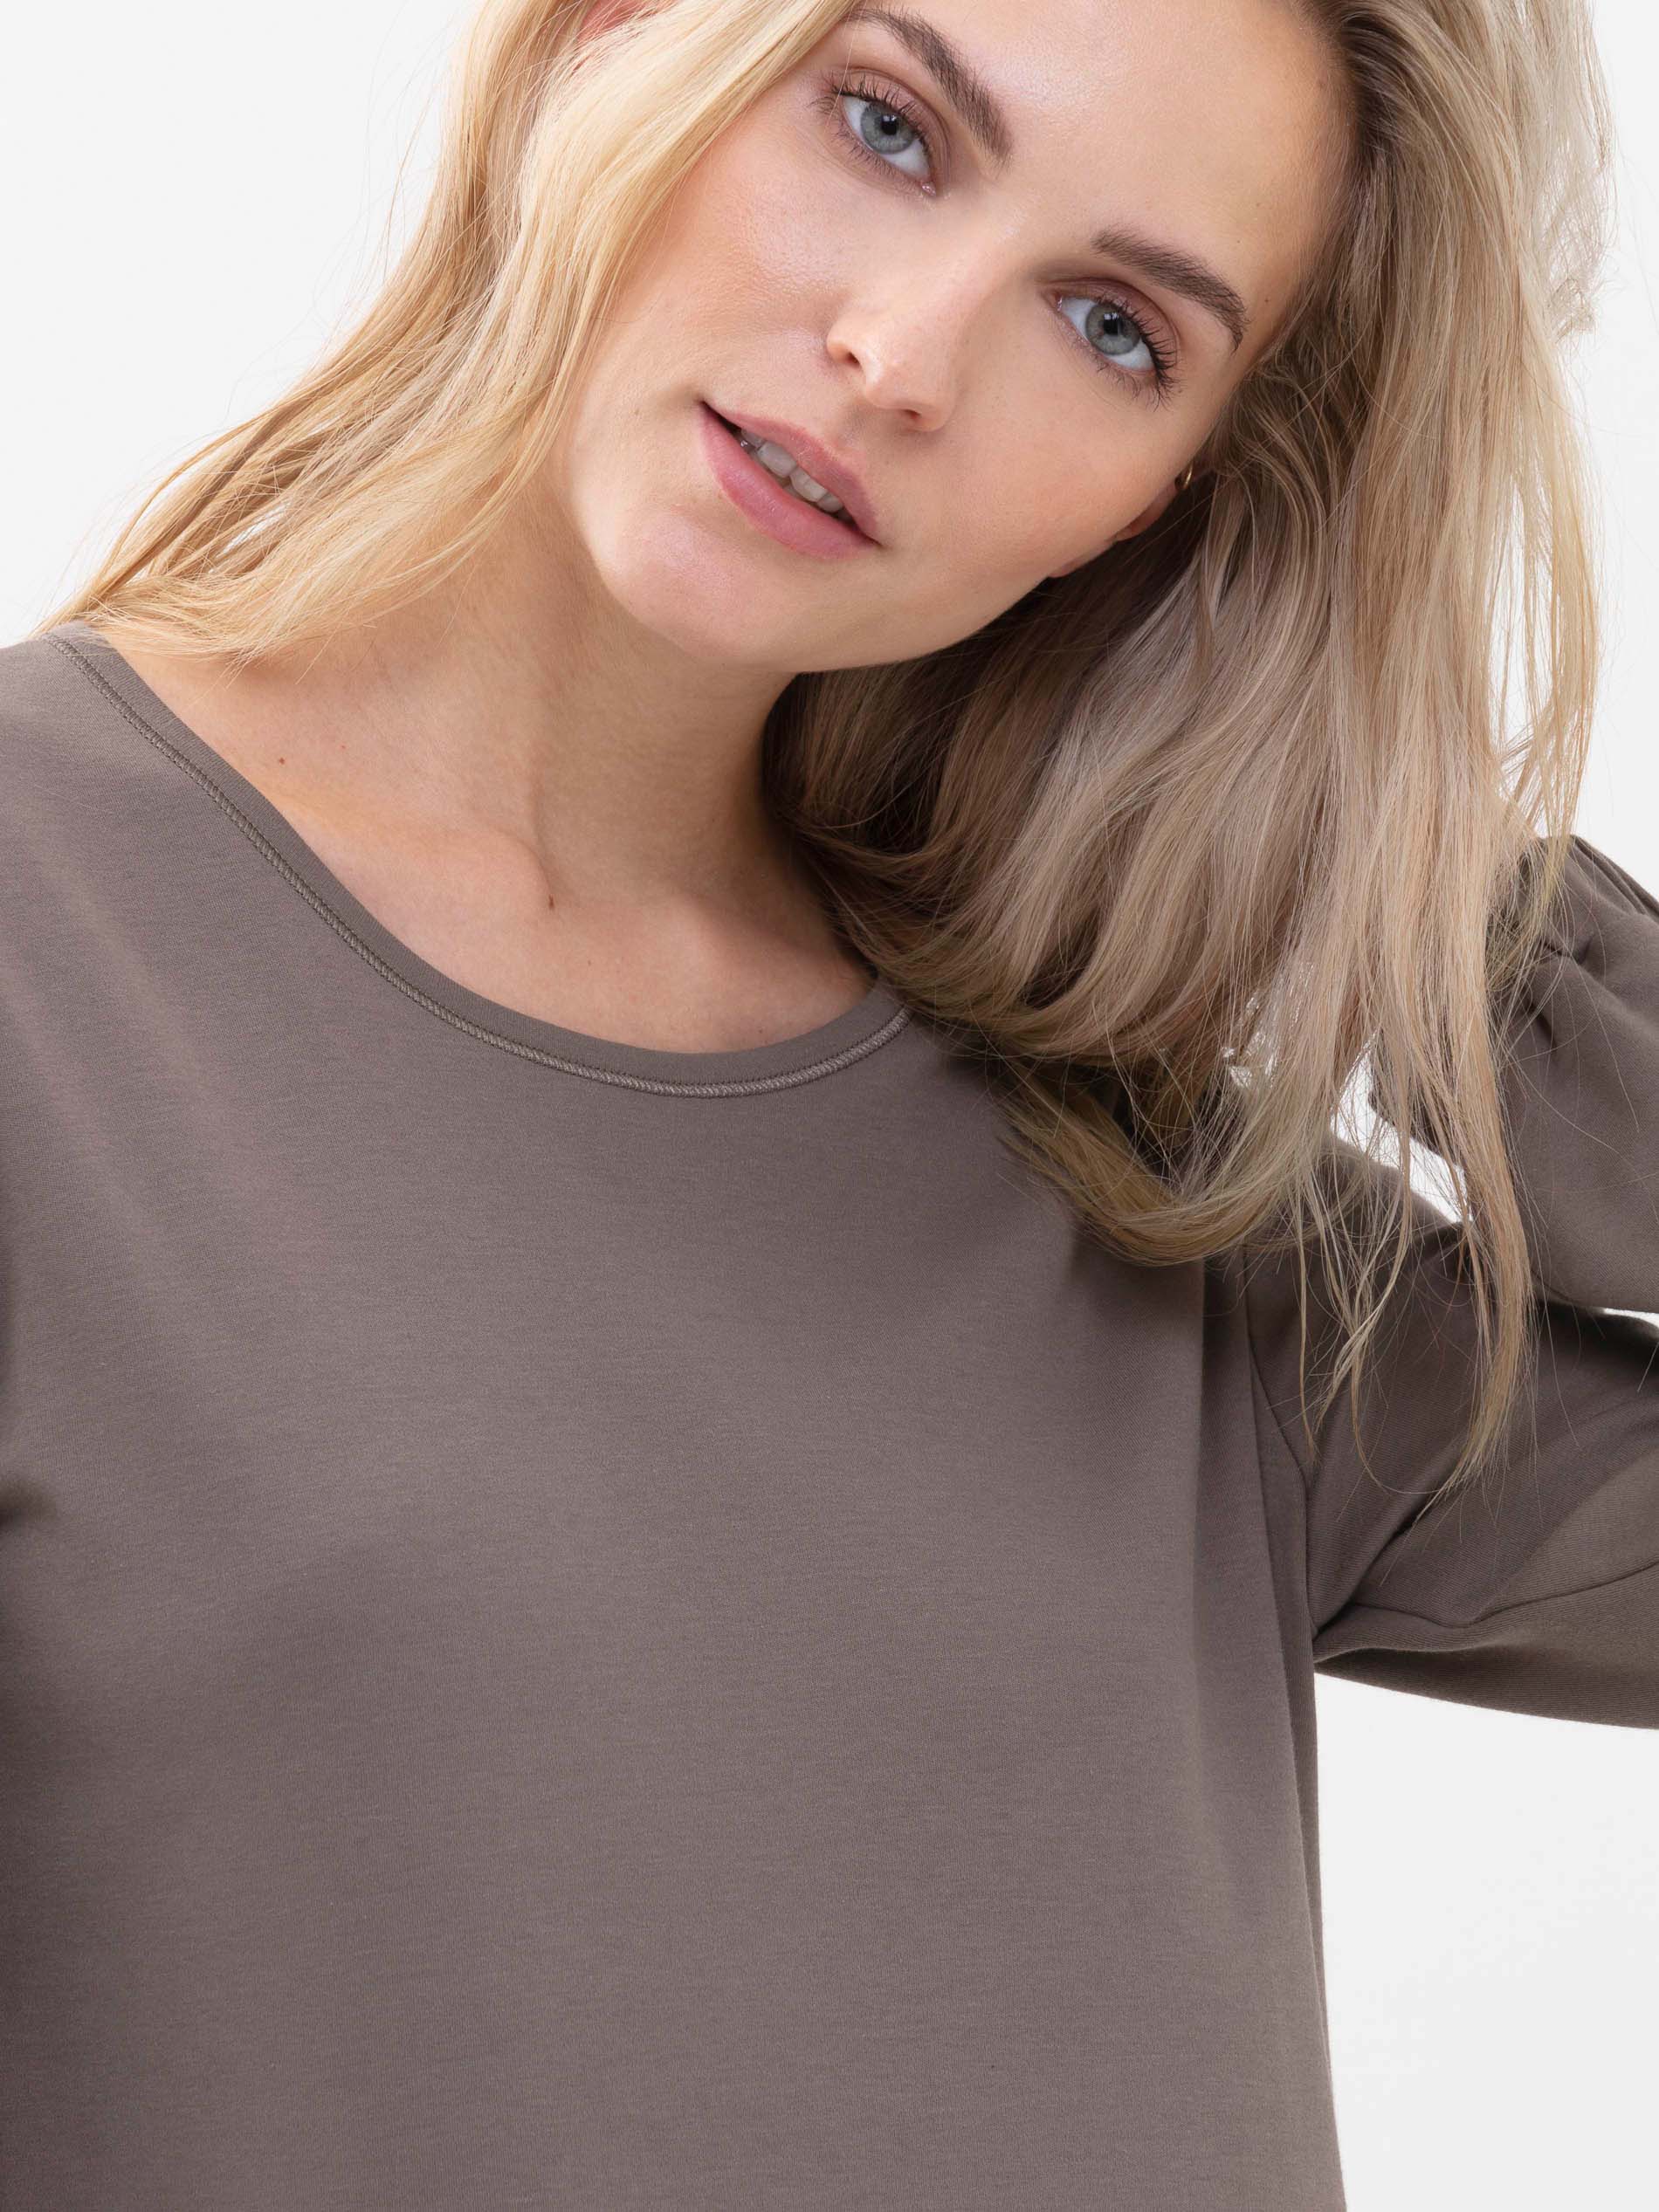 Frontansicht des blonden Damenmodels, sie trägt das Langarm-Shirt aus der Serie Zzzleepwear in der Farbe Deep Taupe | mey®